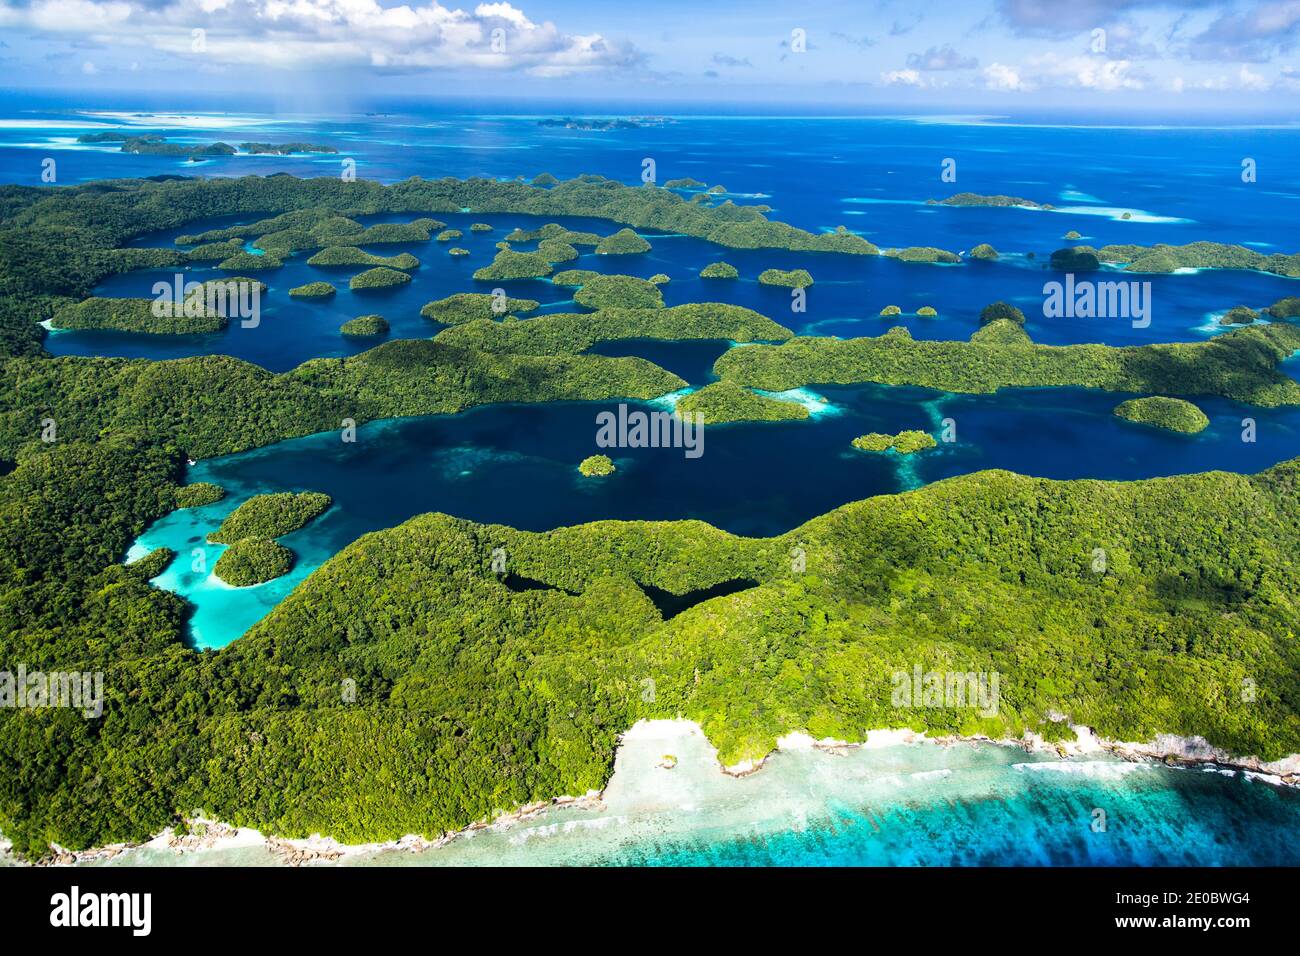 Vue aérienne des îles Rock, sur l'archipel de l'île de Mecherchar, ou Eil Malk, Koror, Palau, Micronésie, Océanie Banque D'Images